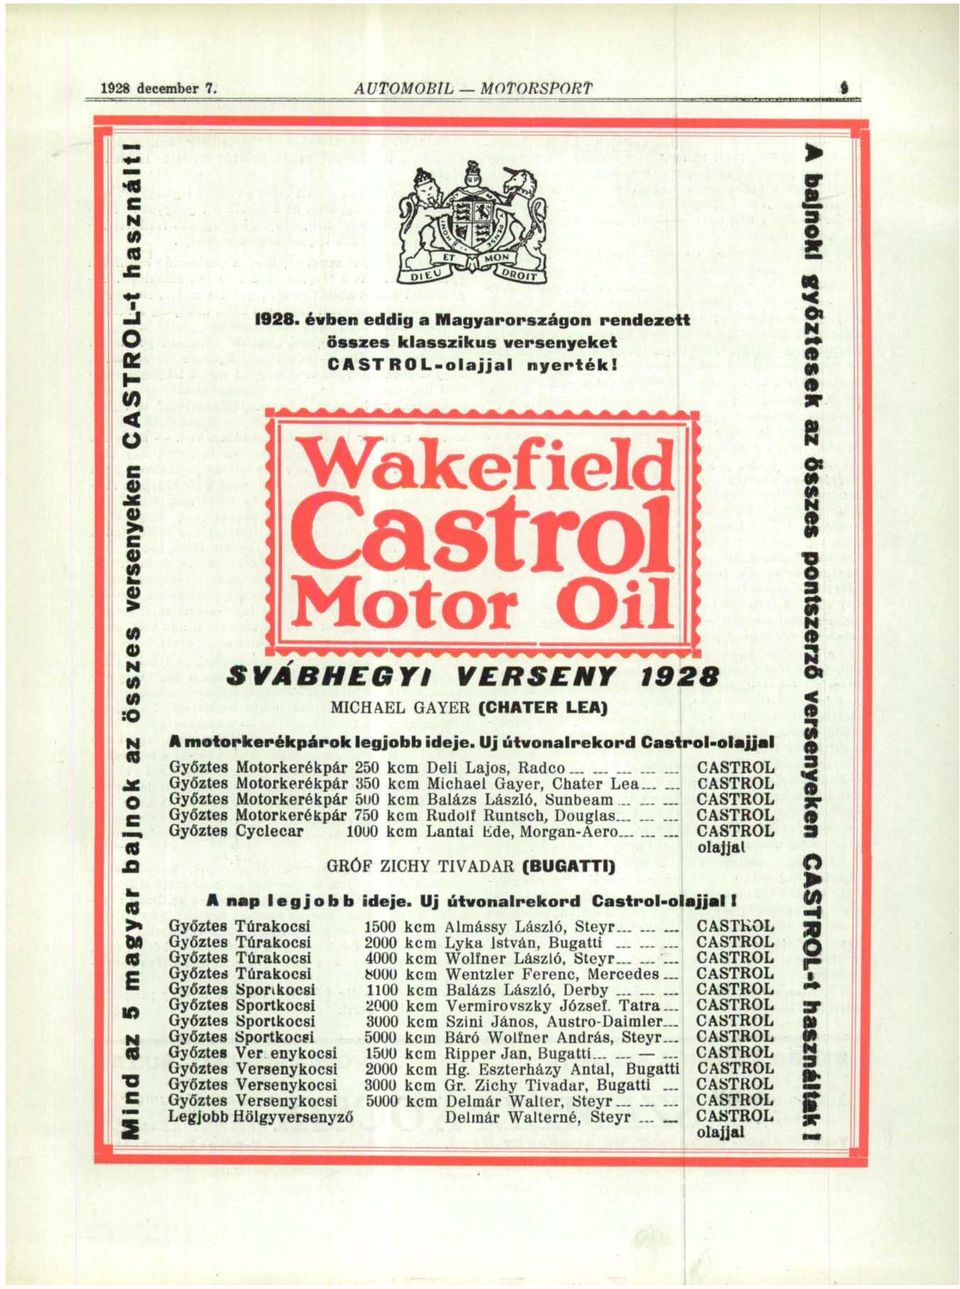 Wakefield Castrol Motof Oil SVÁBHEGYI VERSENY 1928 MICHAEL GAYER (CHATER LEA) A motorkerékpárok legjobb ideje.